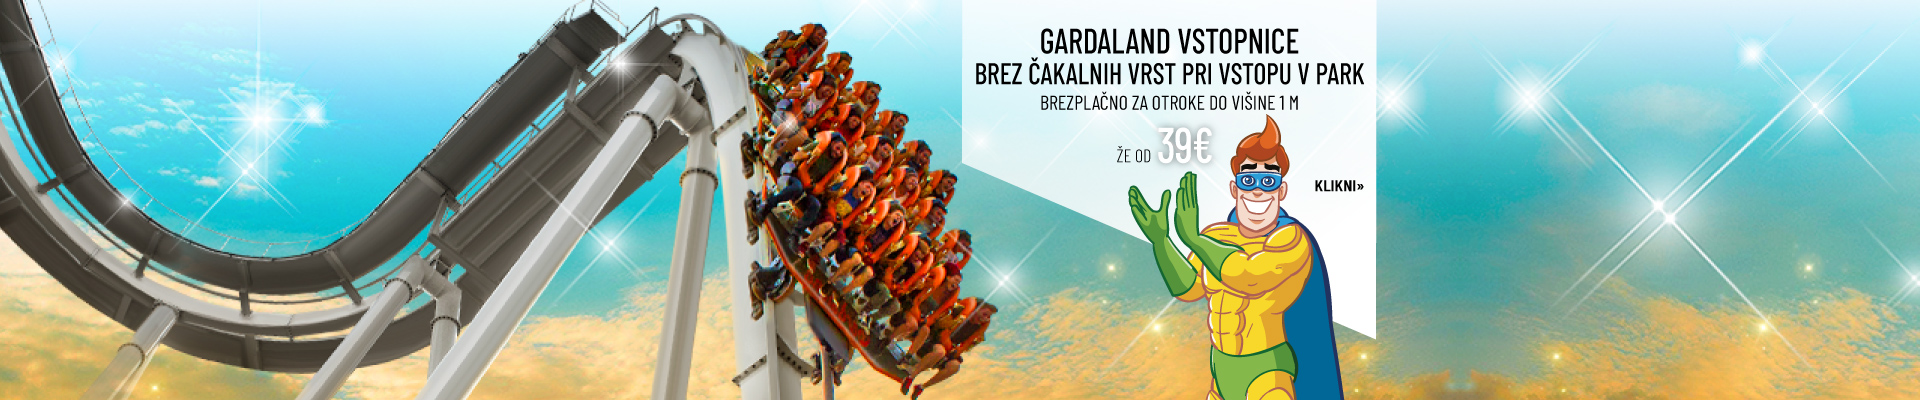 Gardaland2.0